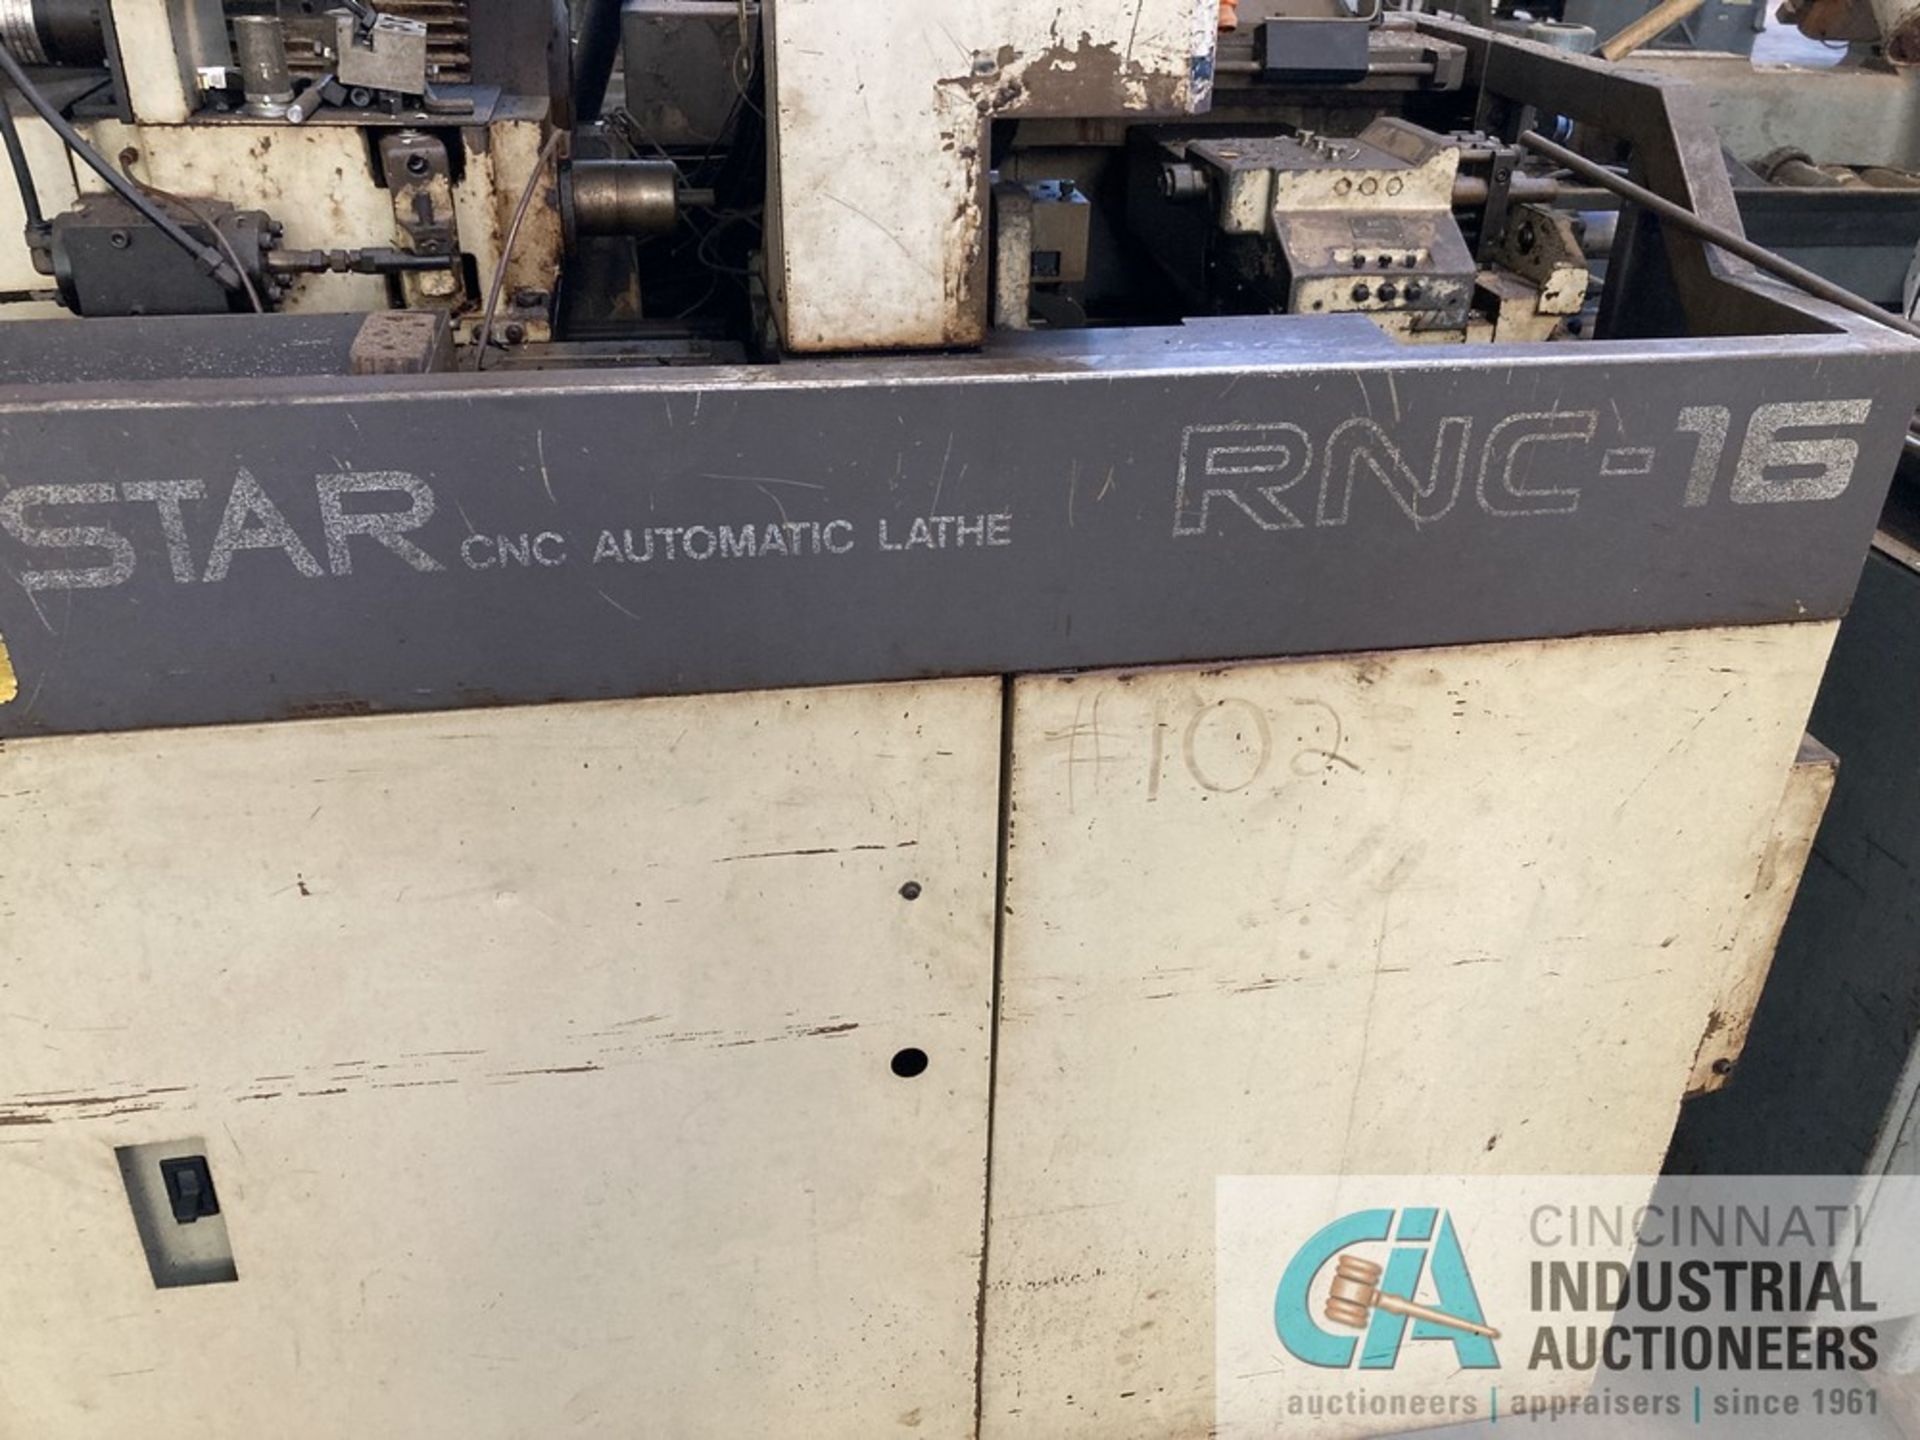 STAR MODEL RNC-16 CNC AUTOMATIC LATHE, FANUC OT CONTROLS - Image 2 of 4